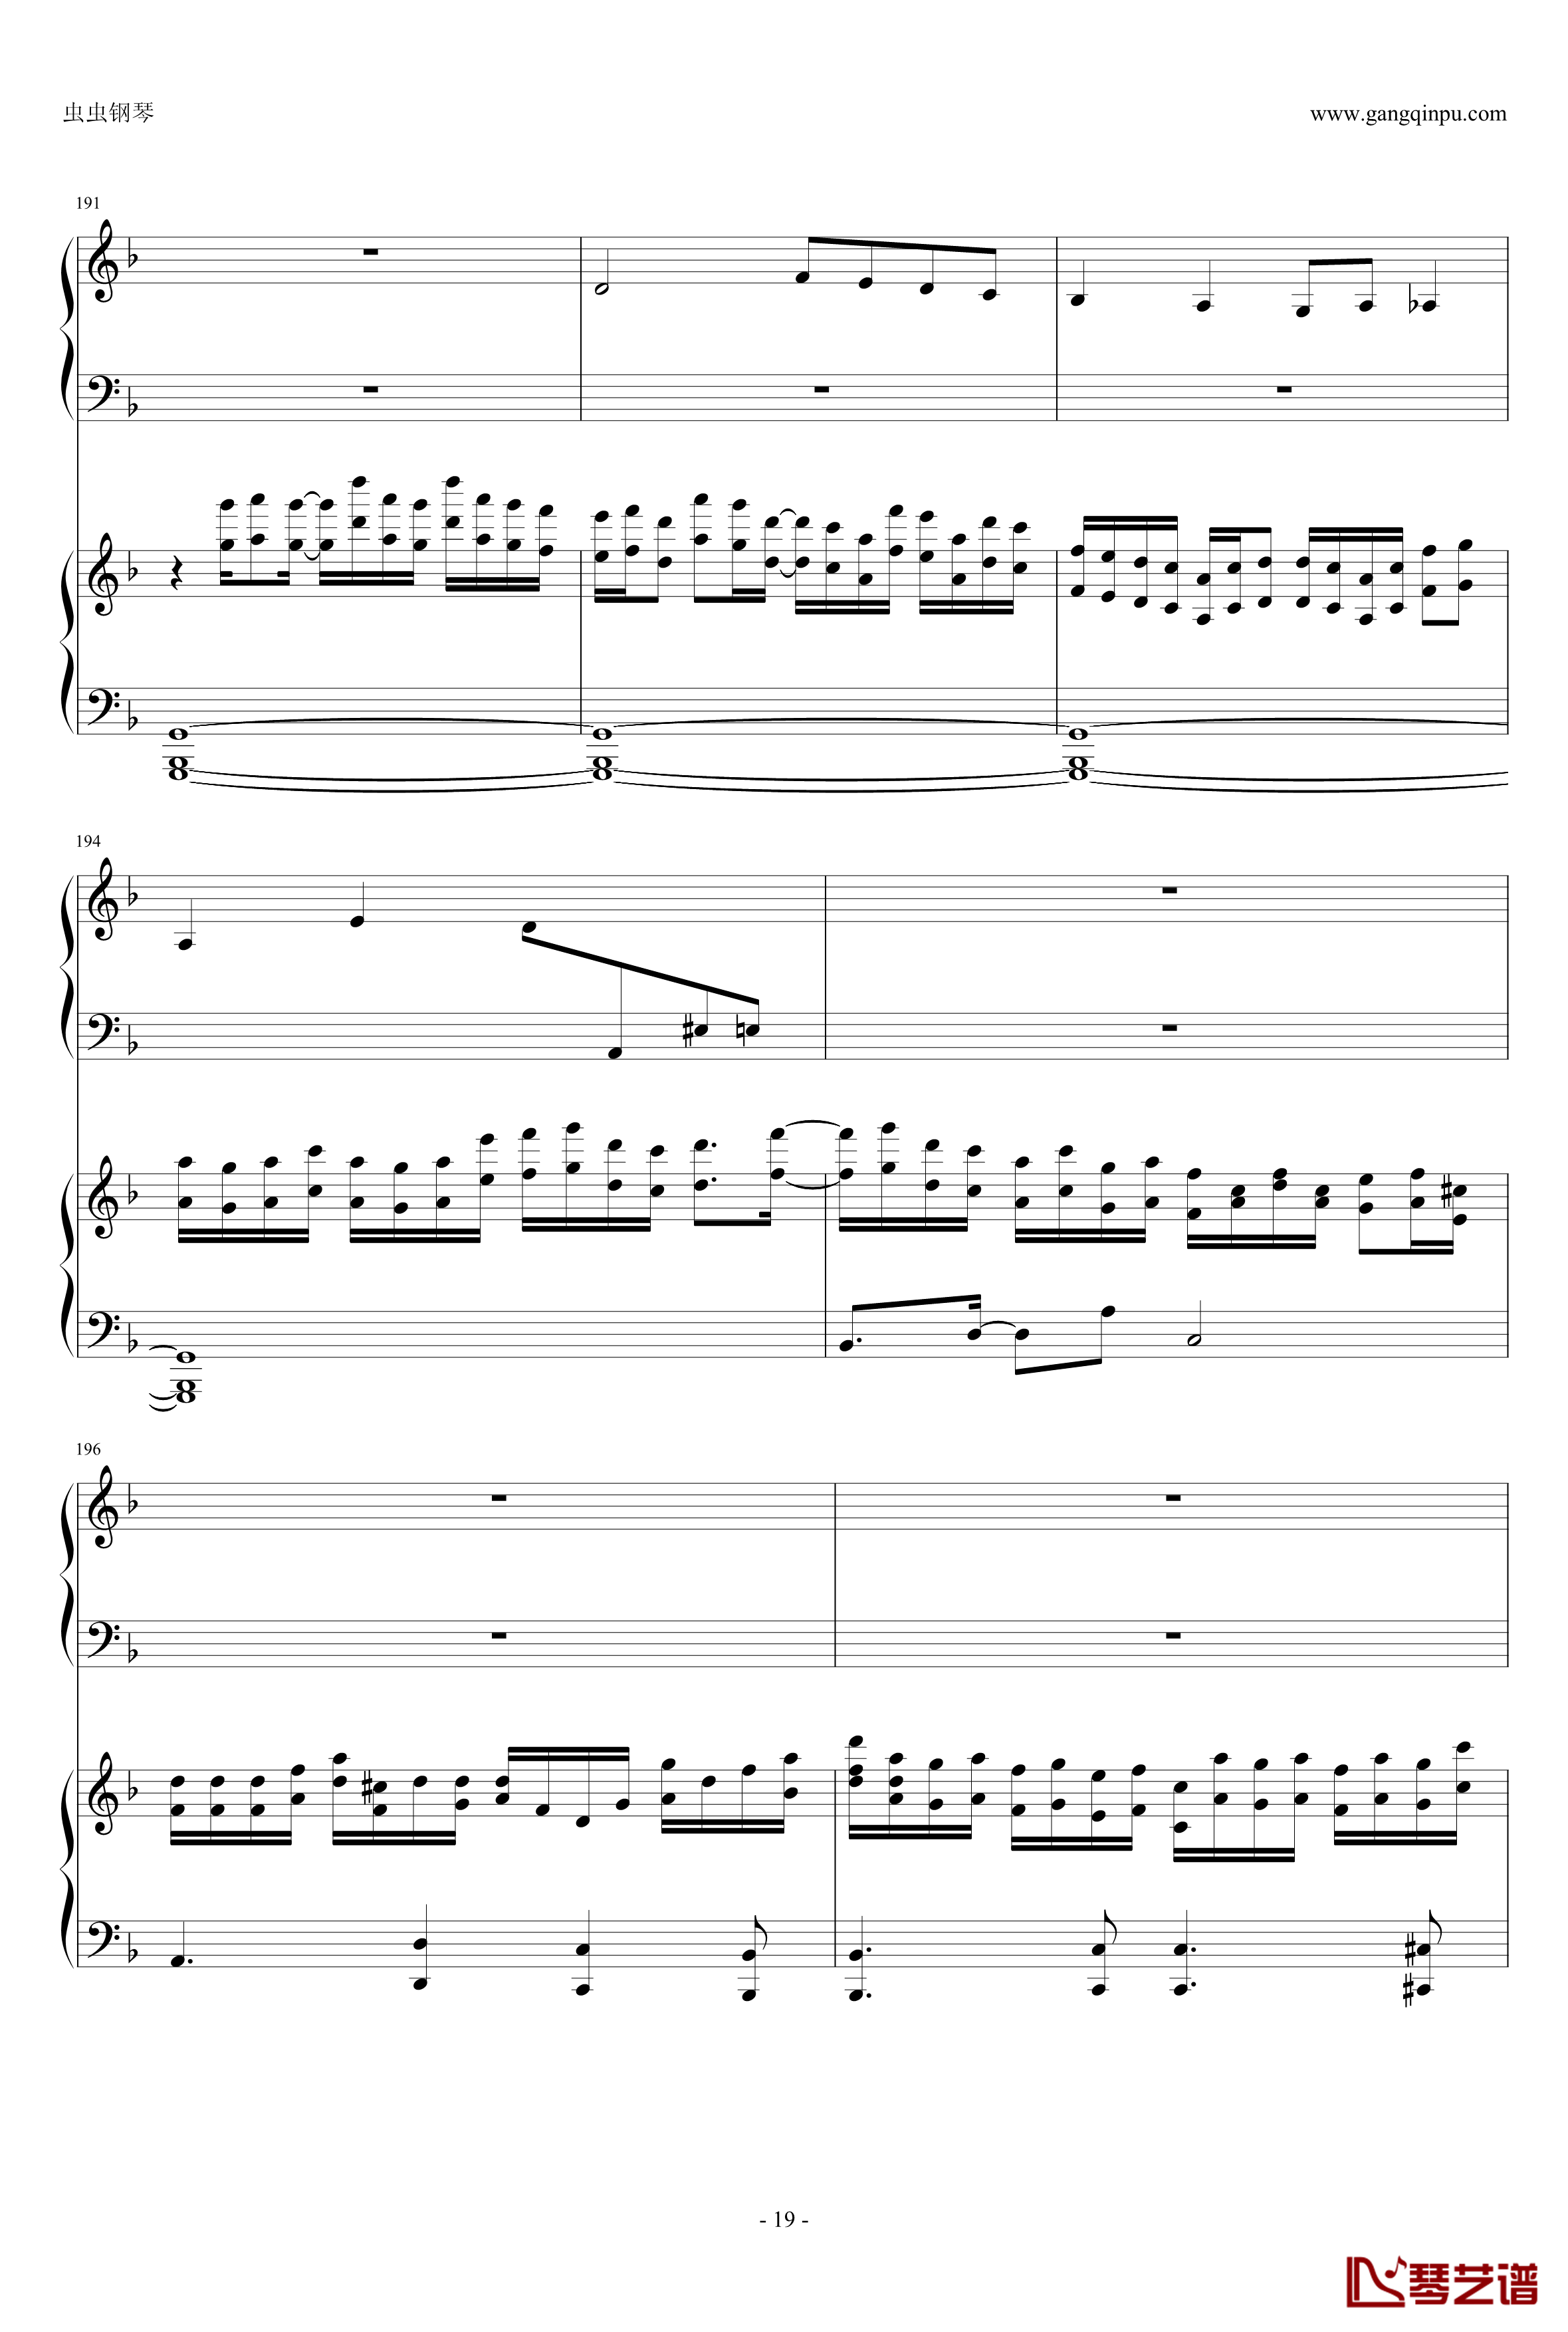 東方連奏曲II Pianoforte钢琴谱-第一部分-东方project19